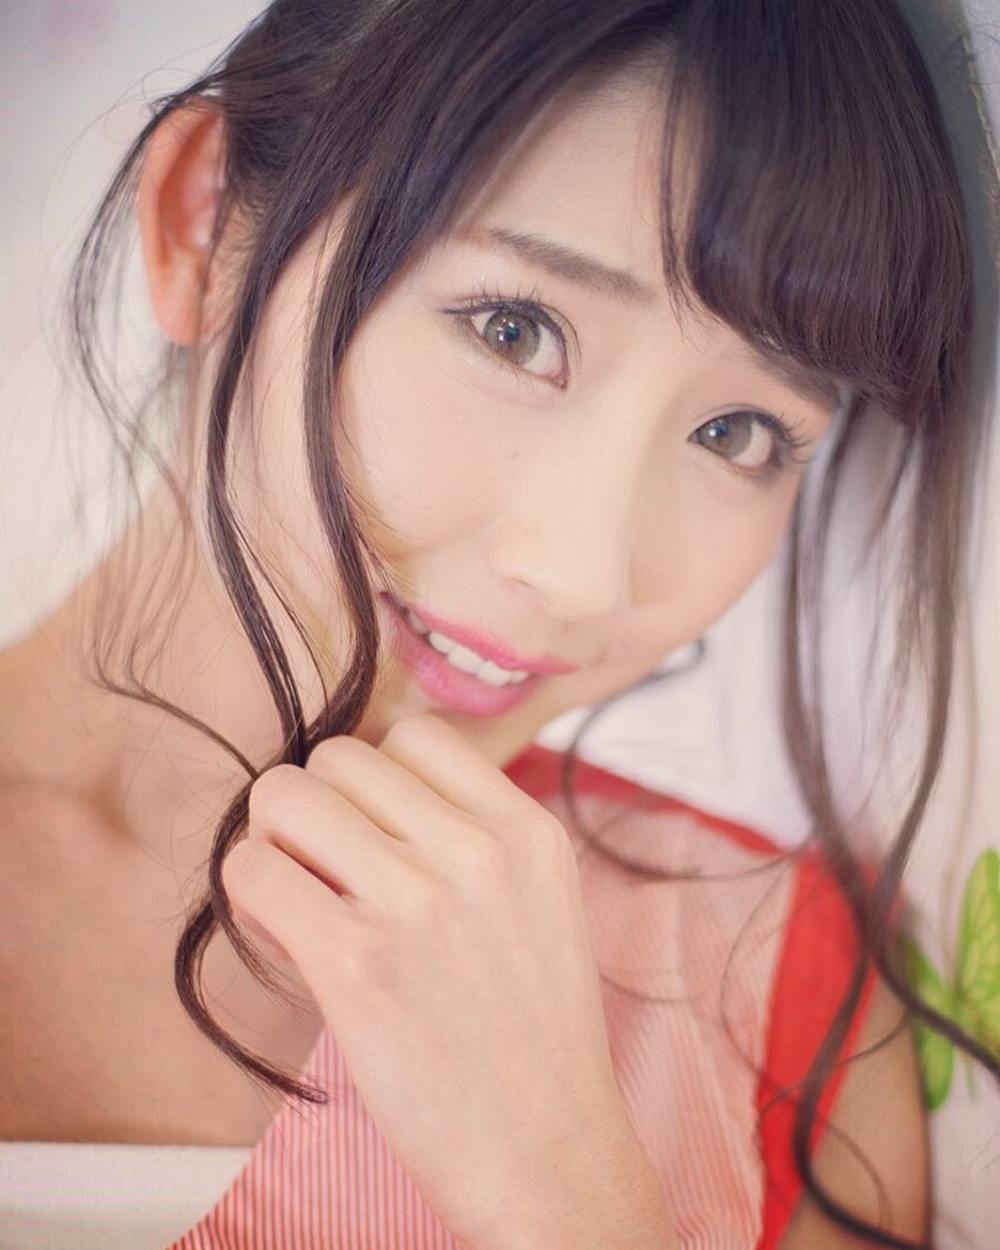 Haruka Kohara Sexy and Hottest Photos , Latest Pics